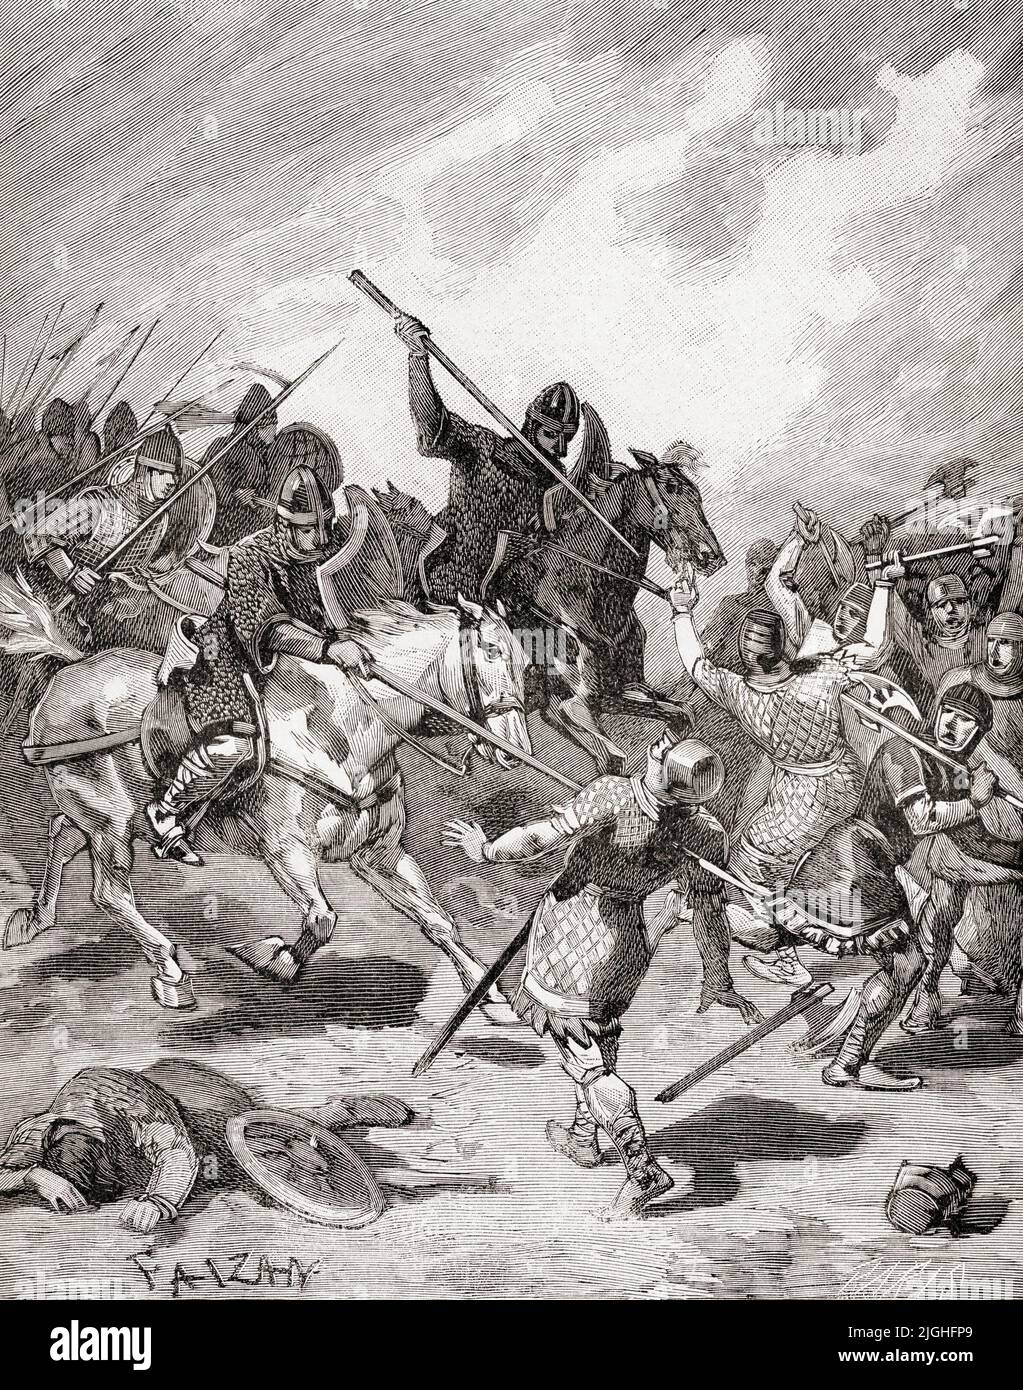 Die Schlacht von Hastings, 14. Oktober 1066, kämpfte zwischen der normannisch-französischen Armee von William, dem Herzog der Normandie, und einer englischen Armee unter dem angelsächsischen König Harold Godwinson, Beginn der normannischen Eroberung Englands. Aus Histoire de France, veröffentlicht 1855. Stockfoto